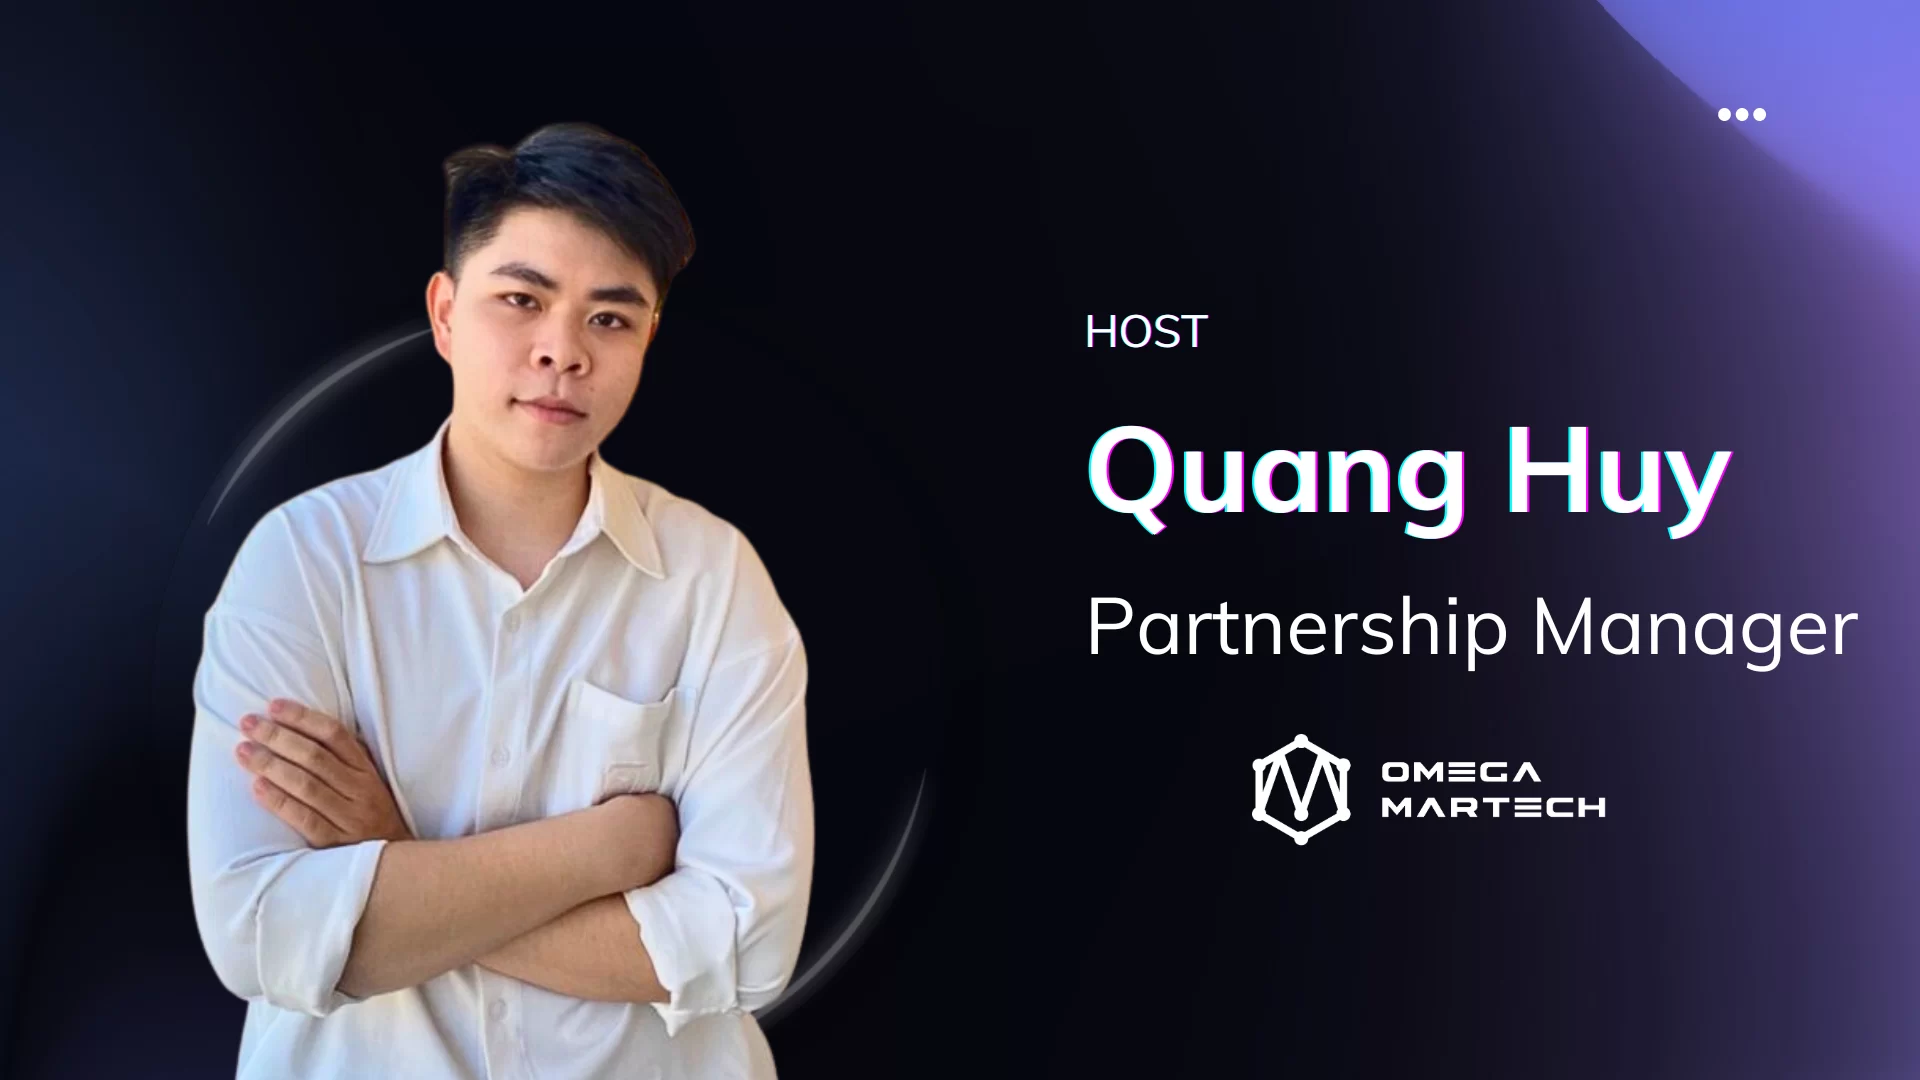 Mr. Quang Huy - Host webinar, Partnership Manager, Omega Martech